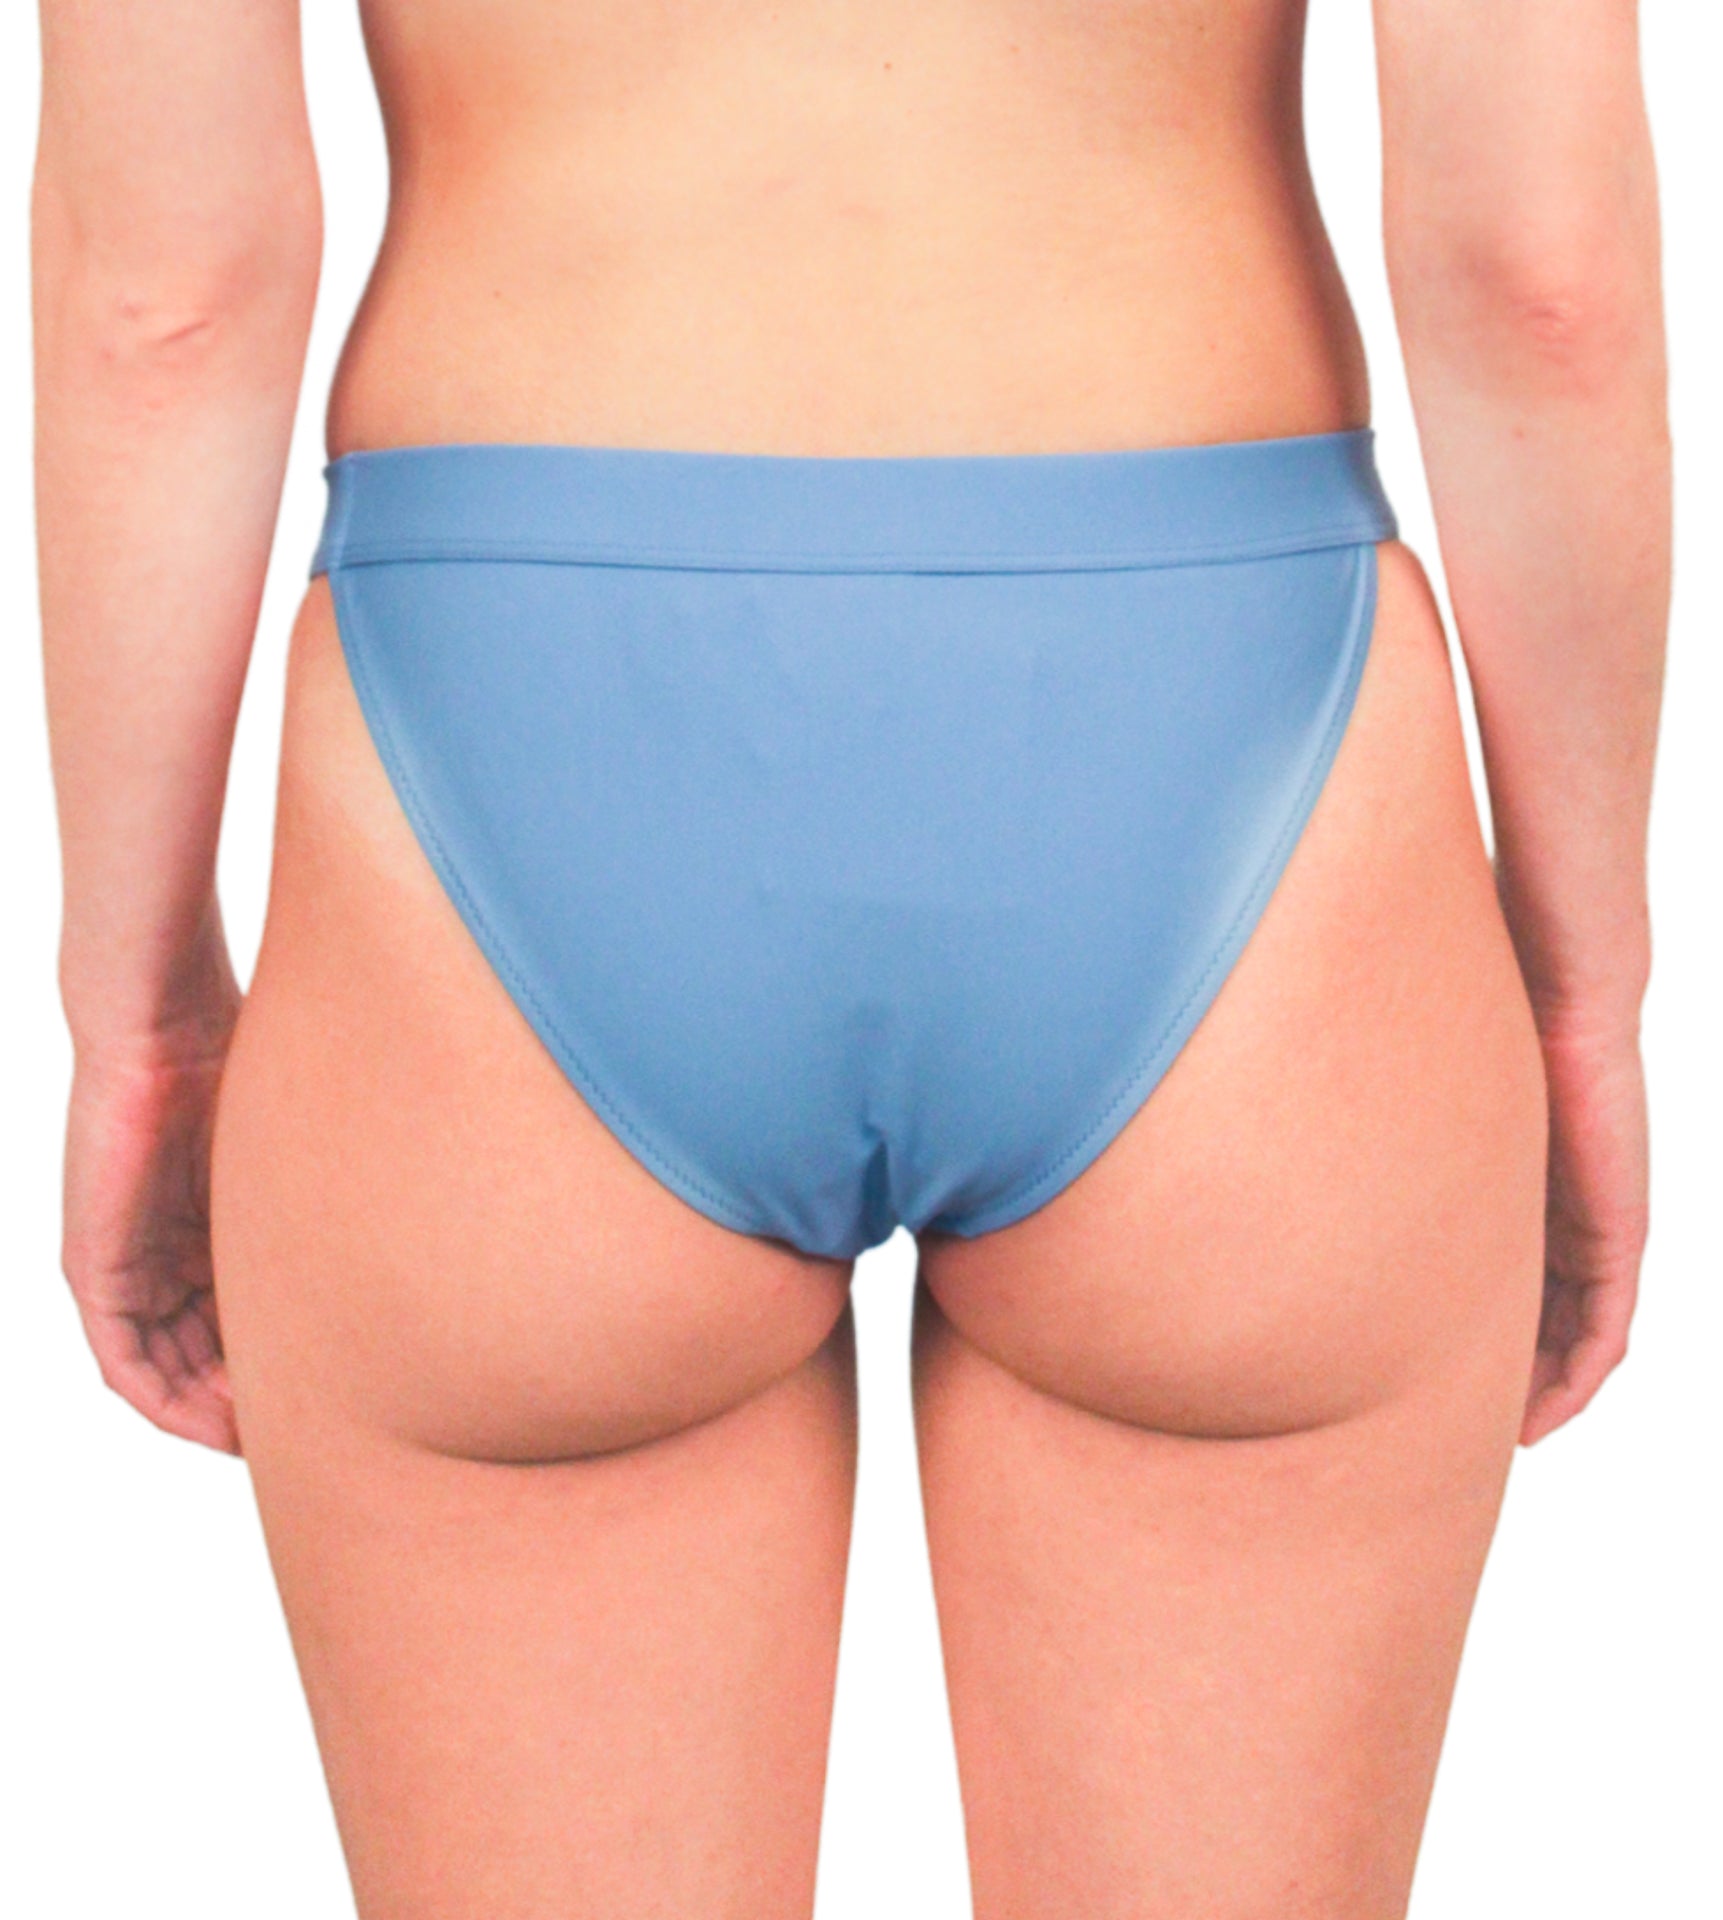 Bower Vreeland Bikini Bottom (Final Sale)